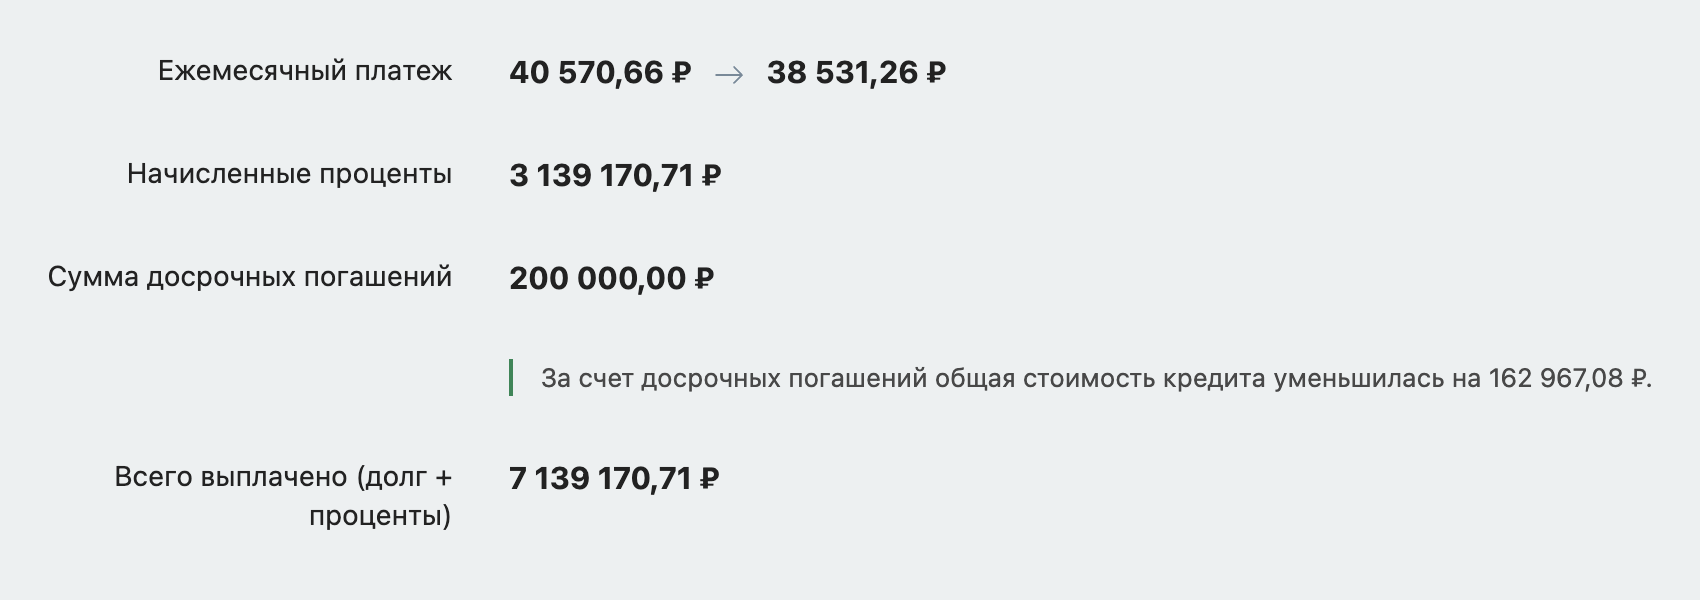 Экономия на переплате — около 163 тысяч рублей. Источник: calcus.ru